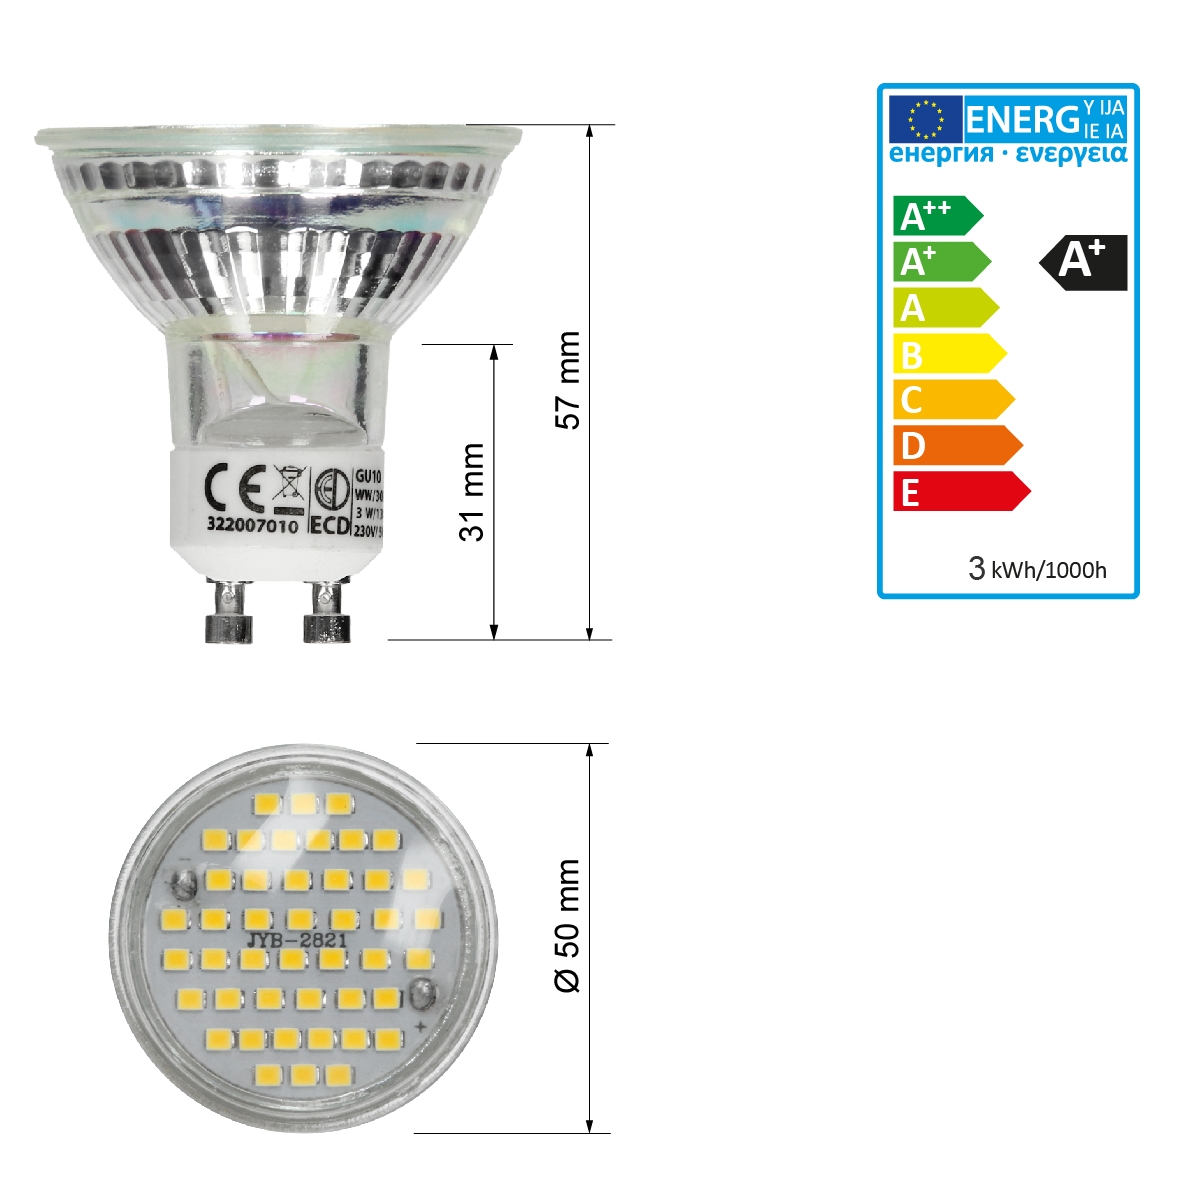 6X GU10 3W=20W LED Strahler Spot Rampenlicht Glühbirne SMD 180LM Warm/Kaltweiß 